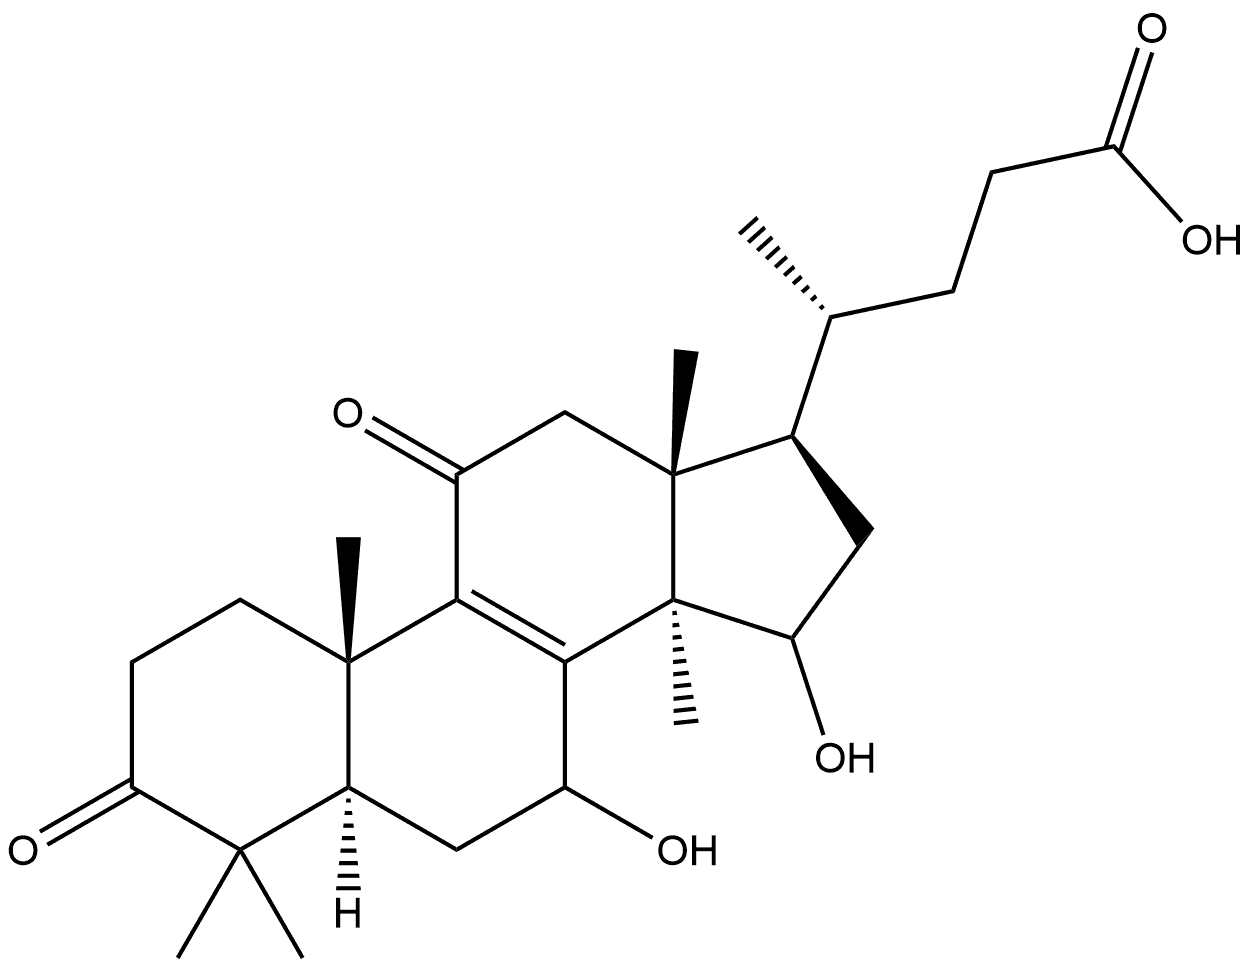 Chol-8-en-24-oic acid, 7,15-dihydroxy-4,4,14-trimethyl-3,11-dioxo-, (5α)-|Chol-8-en-24-oic acid, 7,15-dihydroxy-4,4,14-trimethyl-3,11-dioxo-, (5α)-